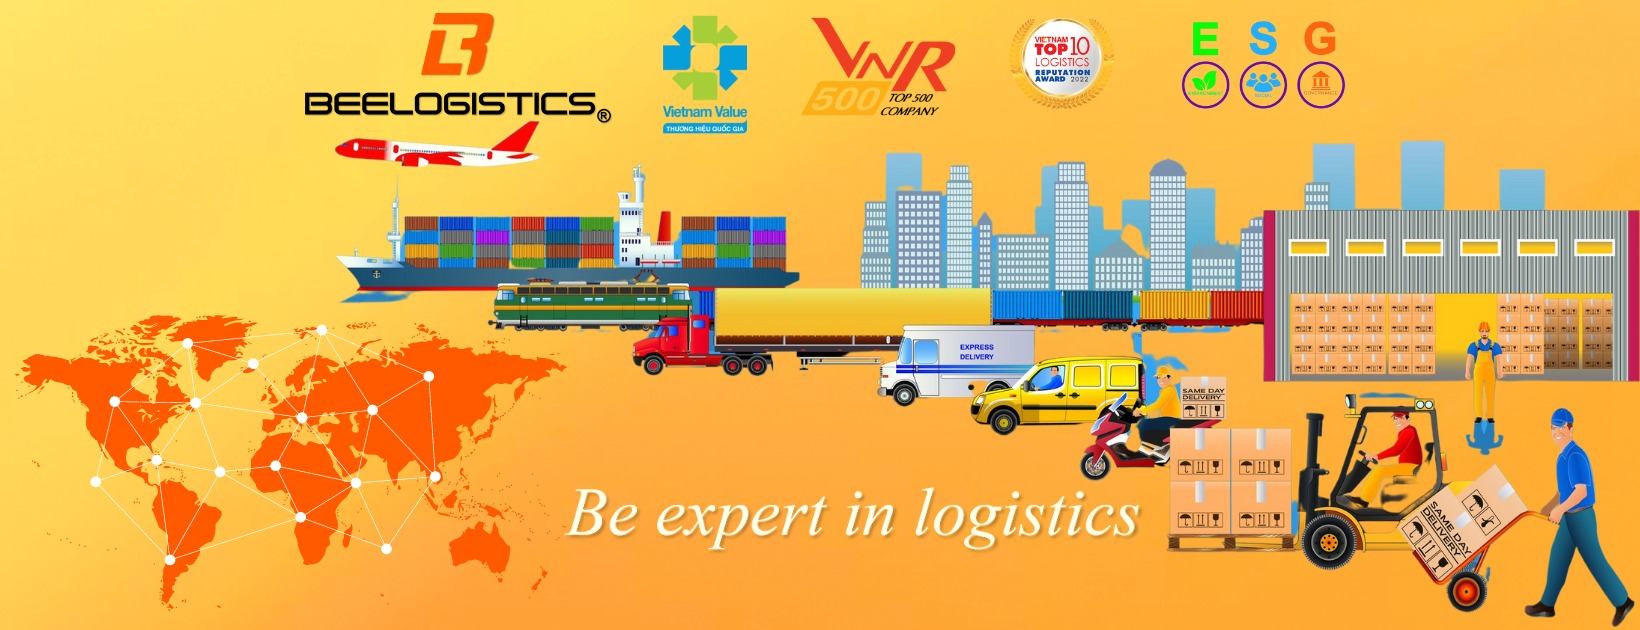 Bee Logistics - Công ty xuất nhập khẩu logistics chất lượng 